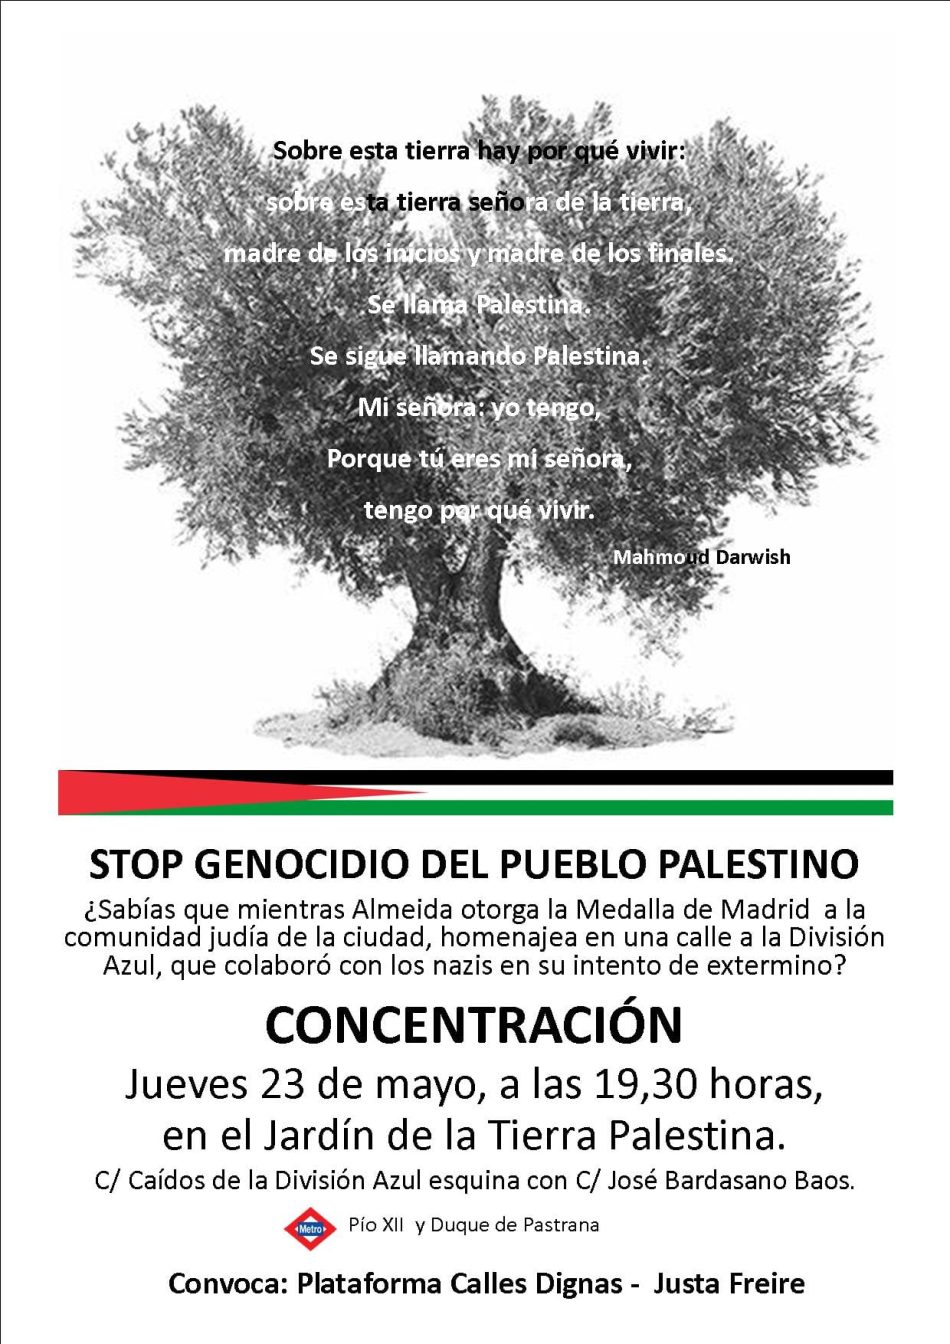 La Plataforma Calles Dignas-Justa Freire convoca concentración contra el genocidio que está sufriendo el pueblo palestino: 23 de marzo